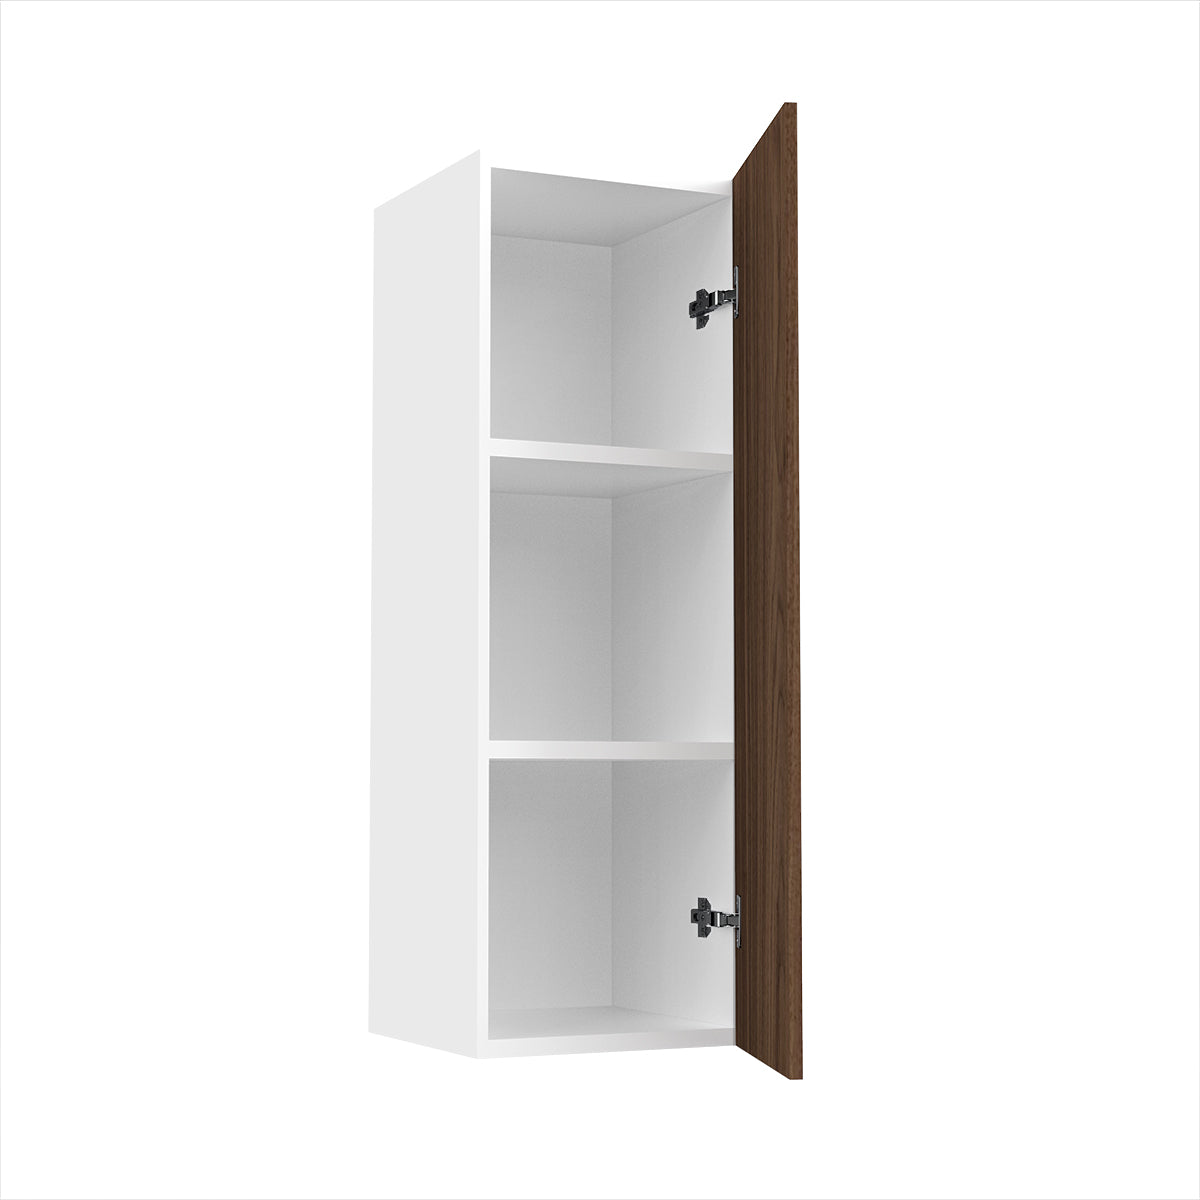 RTA - Walnut - Single Door Wall Cabinets | 12"W x 36"H x 12"D